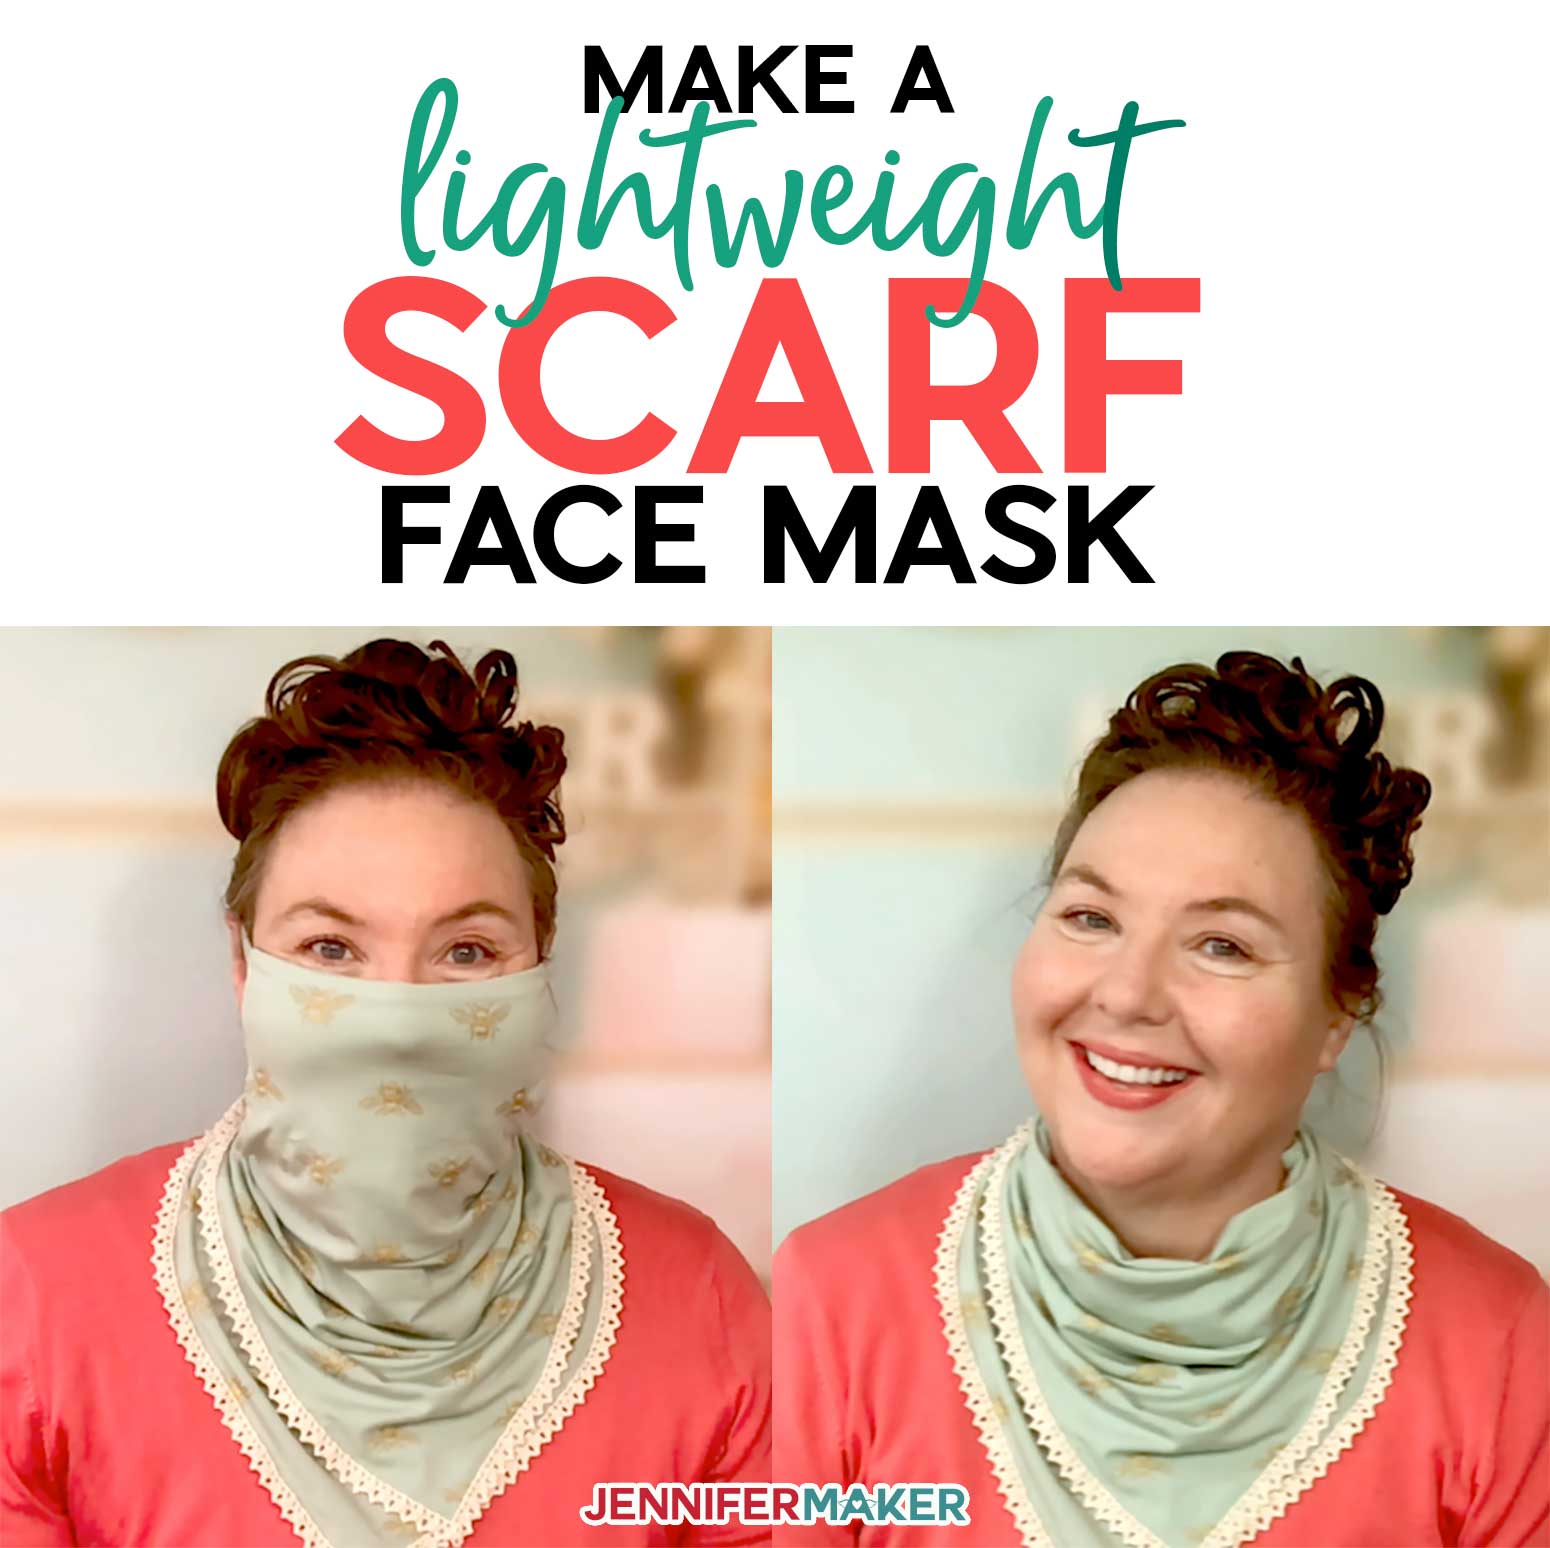 Scarf Face Mask Pattern – Pretty & Stylish!